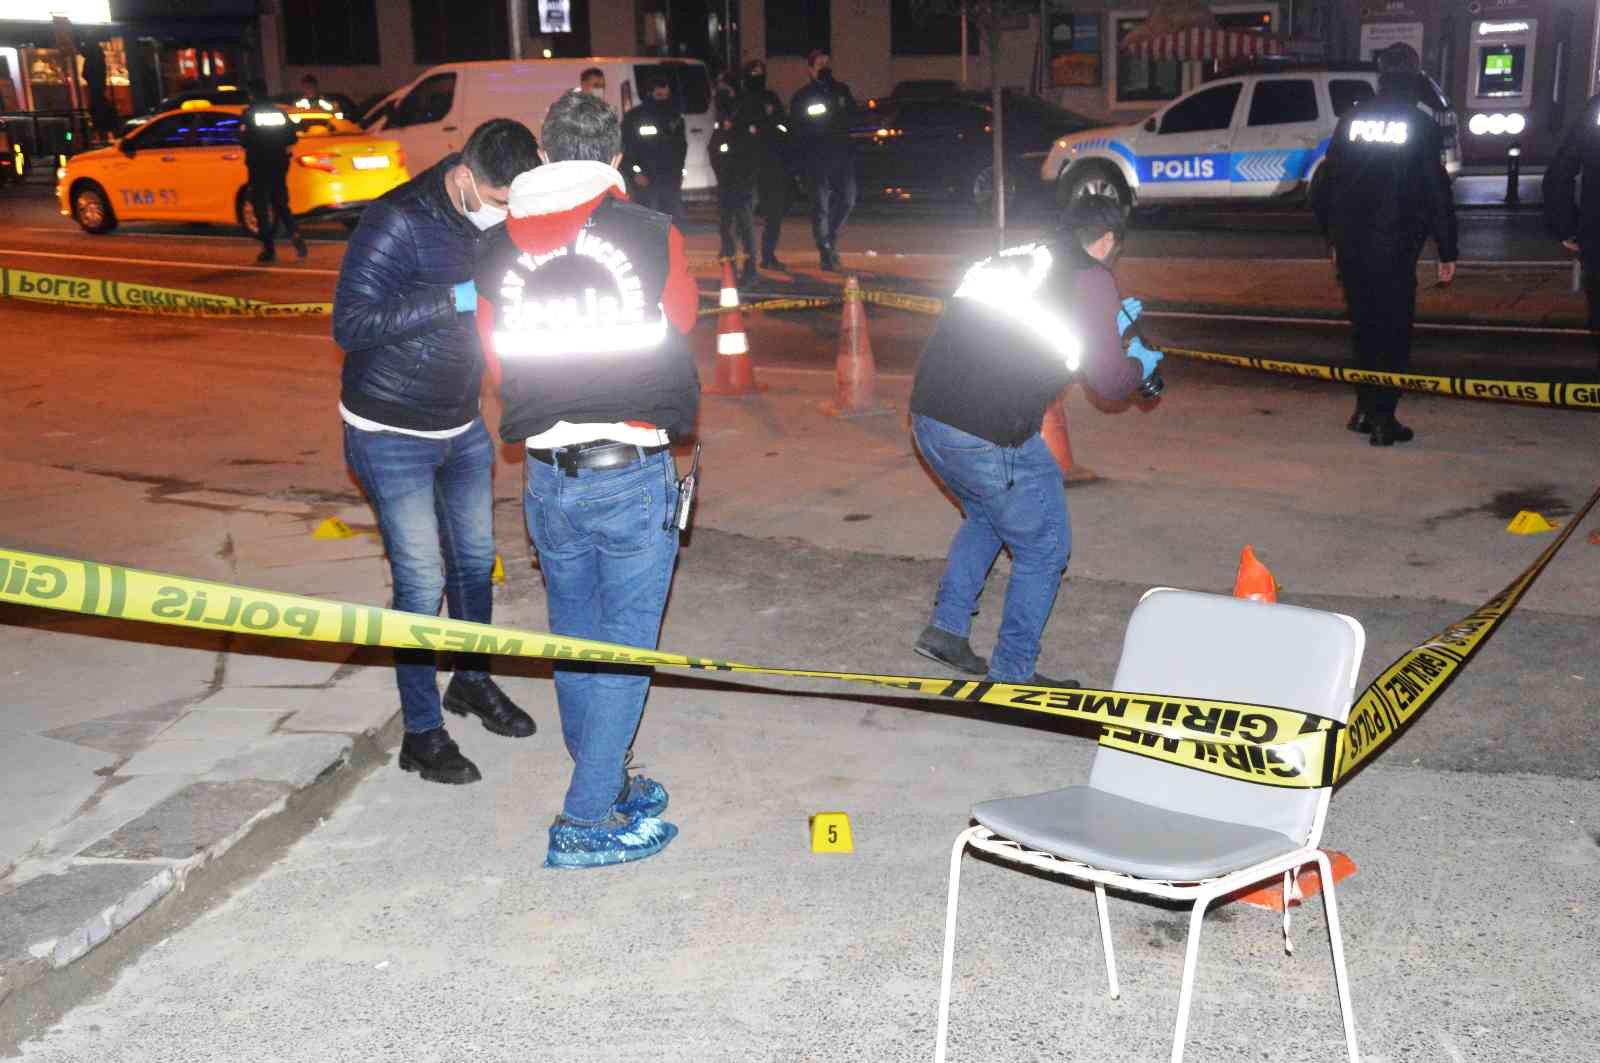 Beşiktaş Bebek’te lüks mekâna silahlı saldırı: 3 yaralı #istanbul